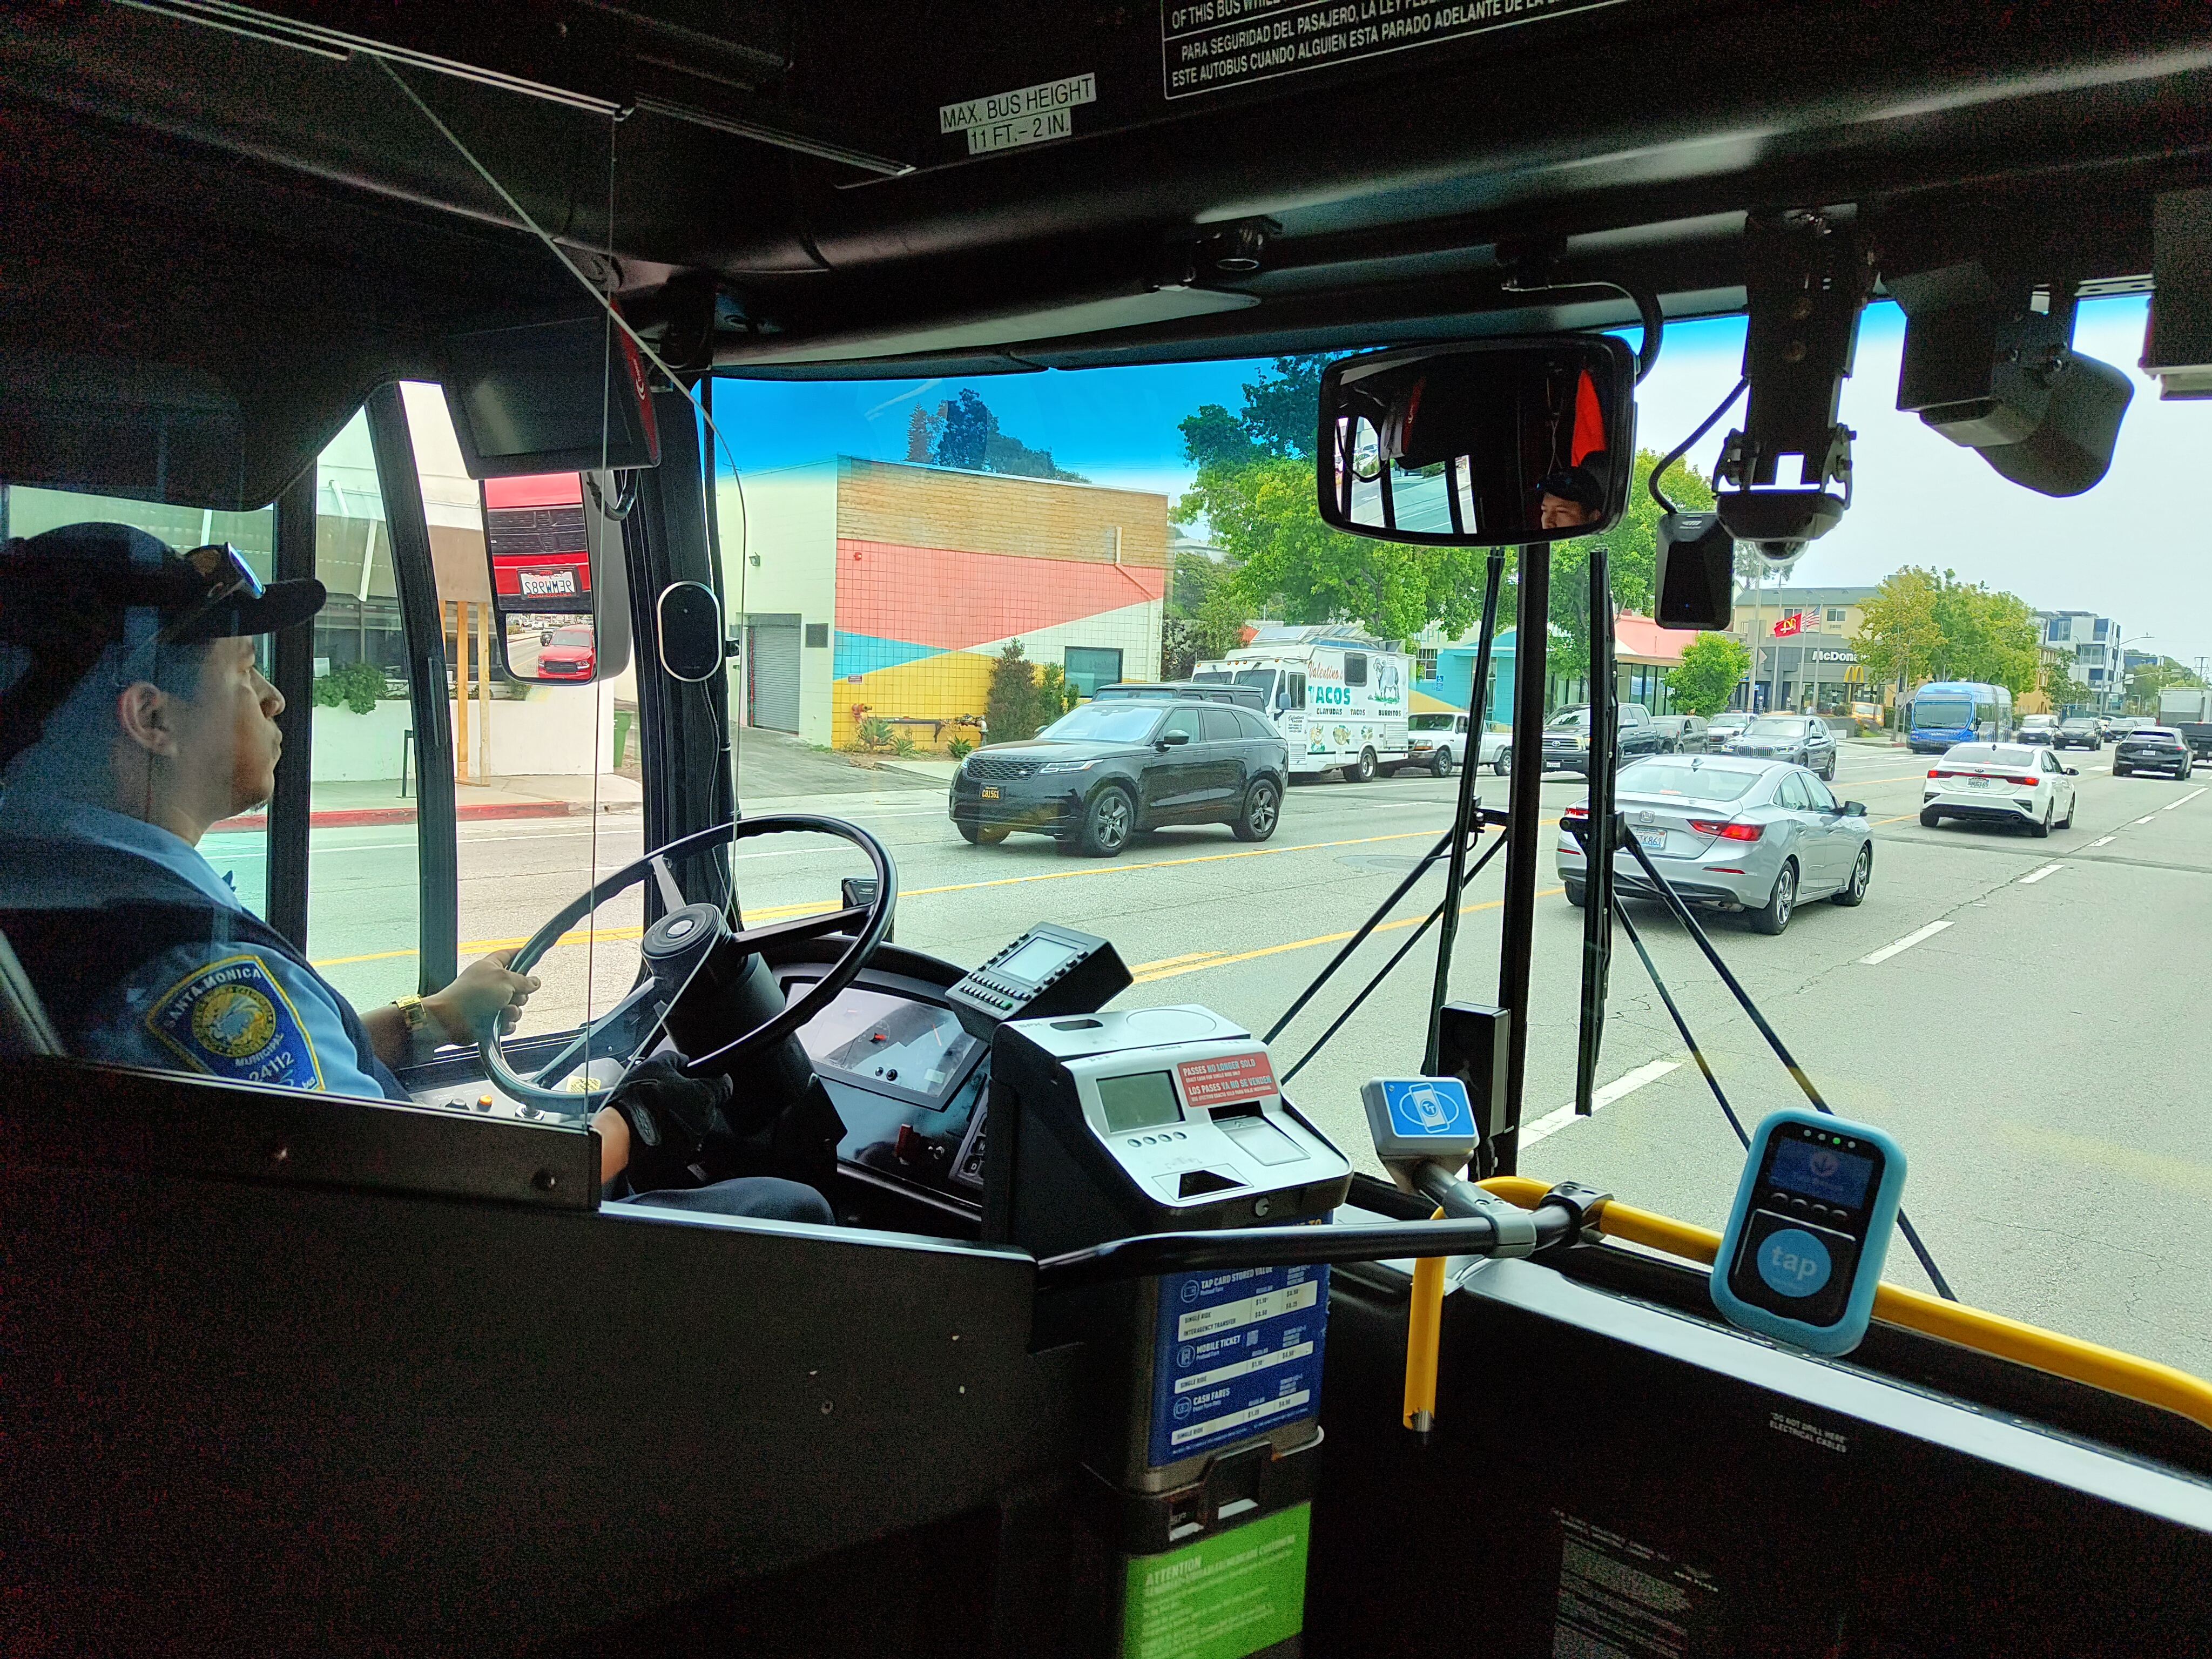 W Stanach Zjednoczonych autobusy są wyposażone w sztuczną inteligencję, która automatycznie karze samochody zaparkowane na linii autobusowej